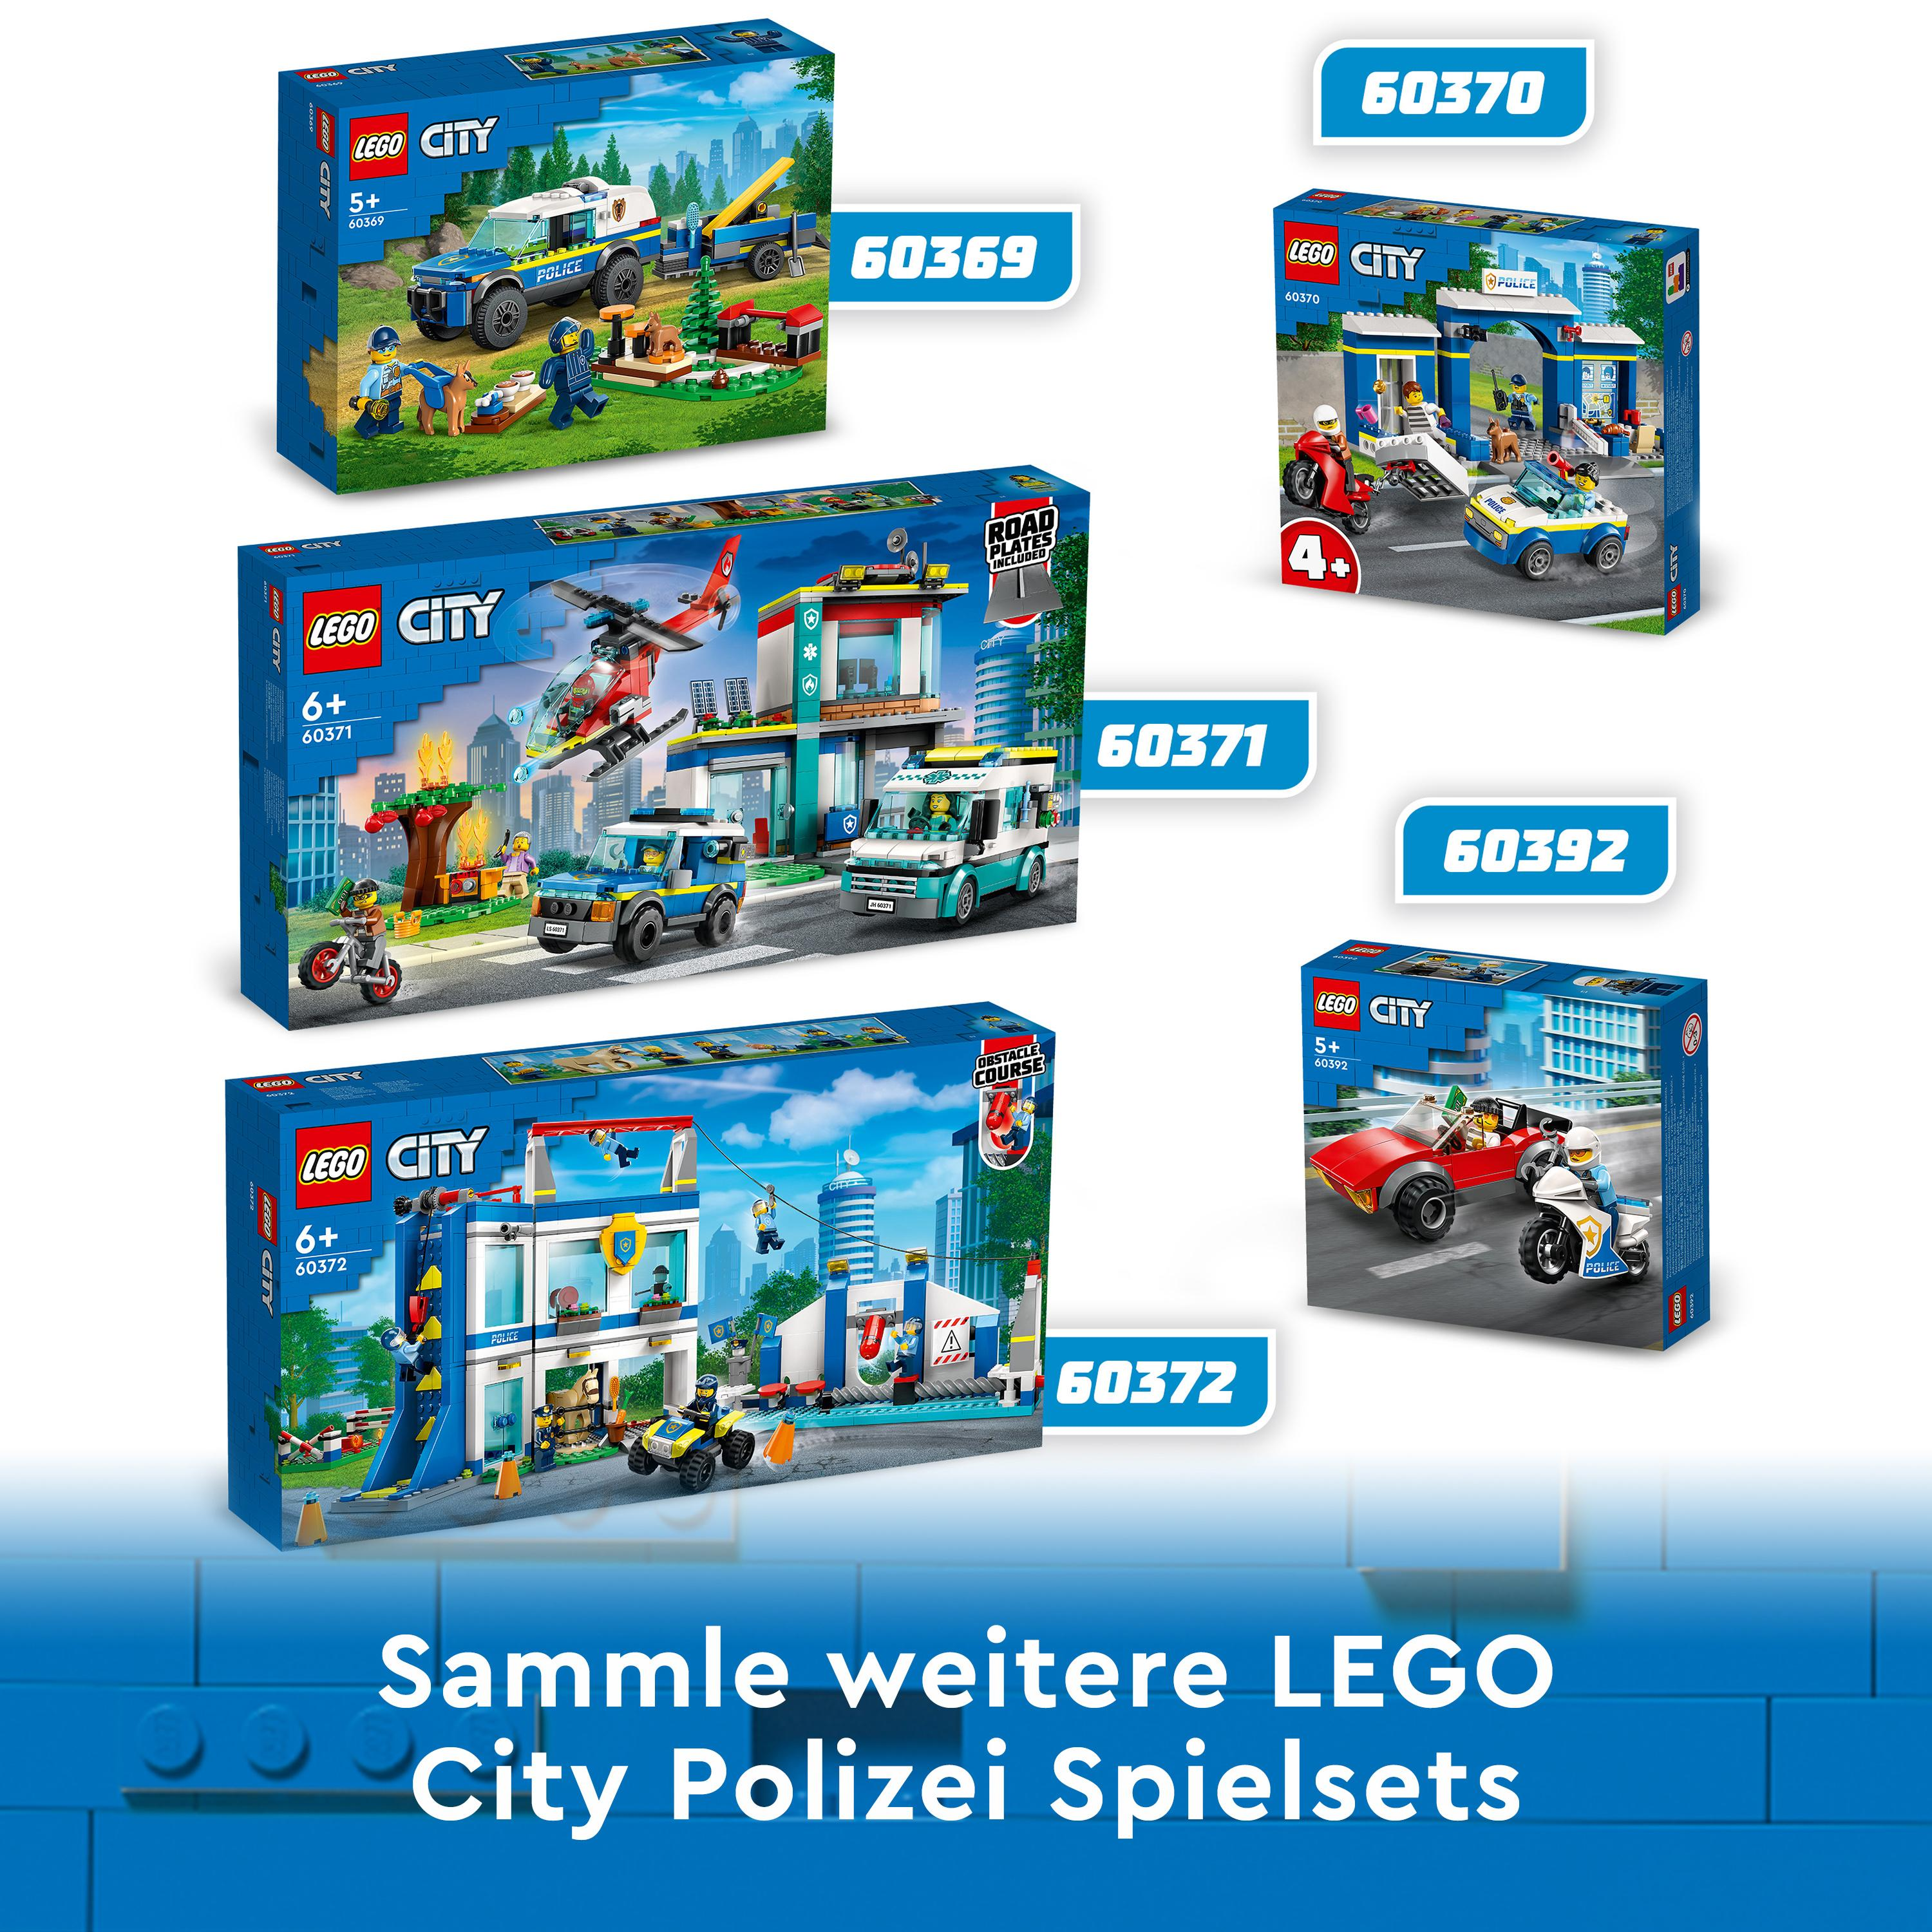 LEGO City 60372 Polizeischule Mehrfarbig Bausatz